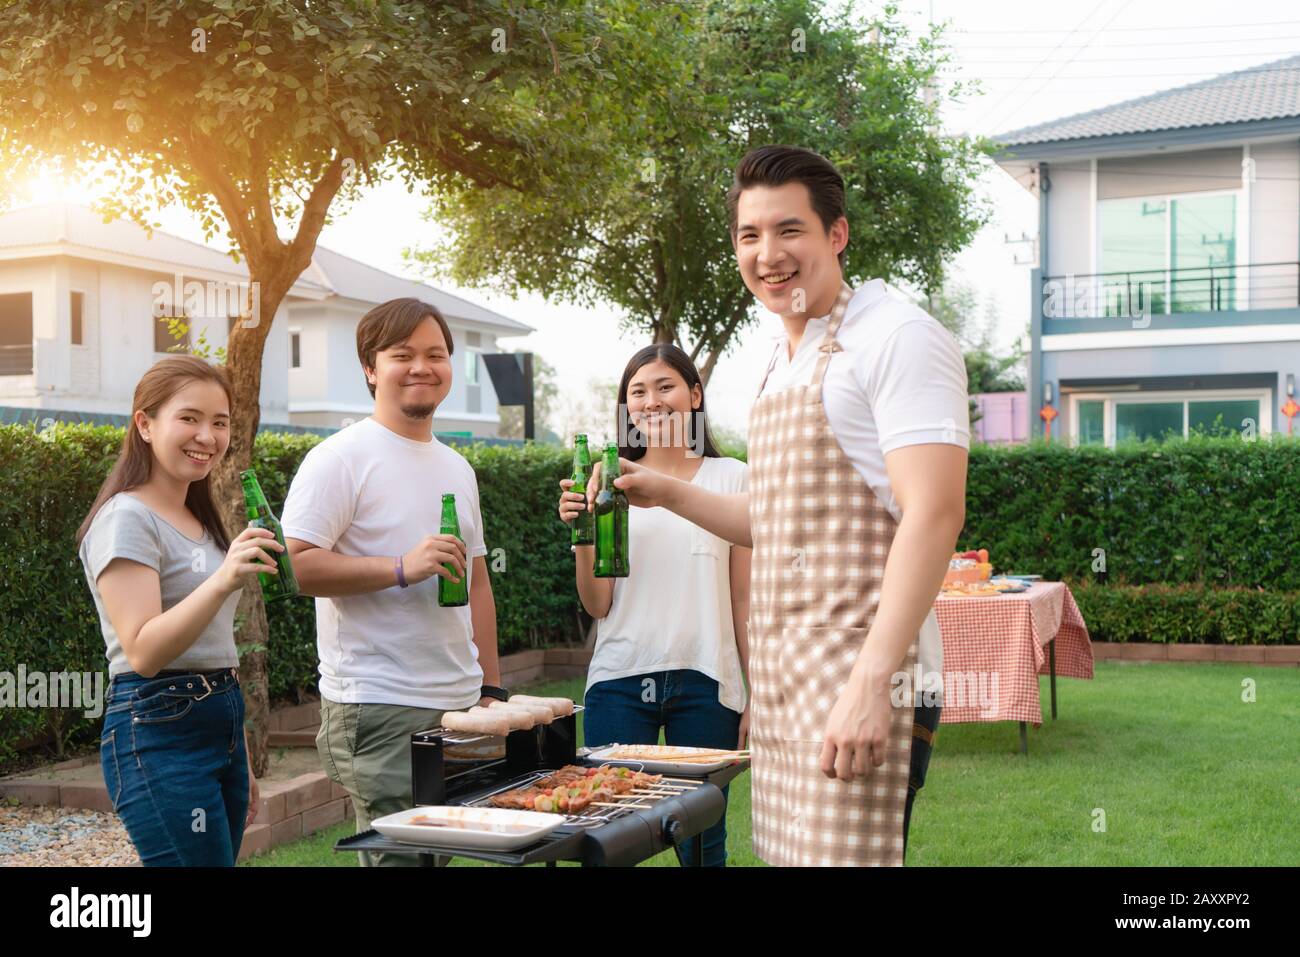 Asiatischer Mann, der grillt und Wurst für eine Gruppe von Freunden kocht, um im Garten zu Hause Party zu essen. Gruppe von Freunden, die Gartengrill la im Freien haben Stockfoto